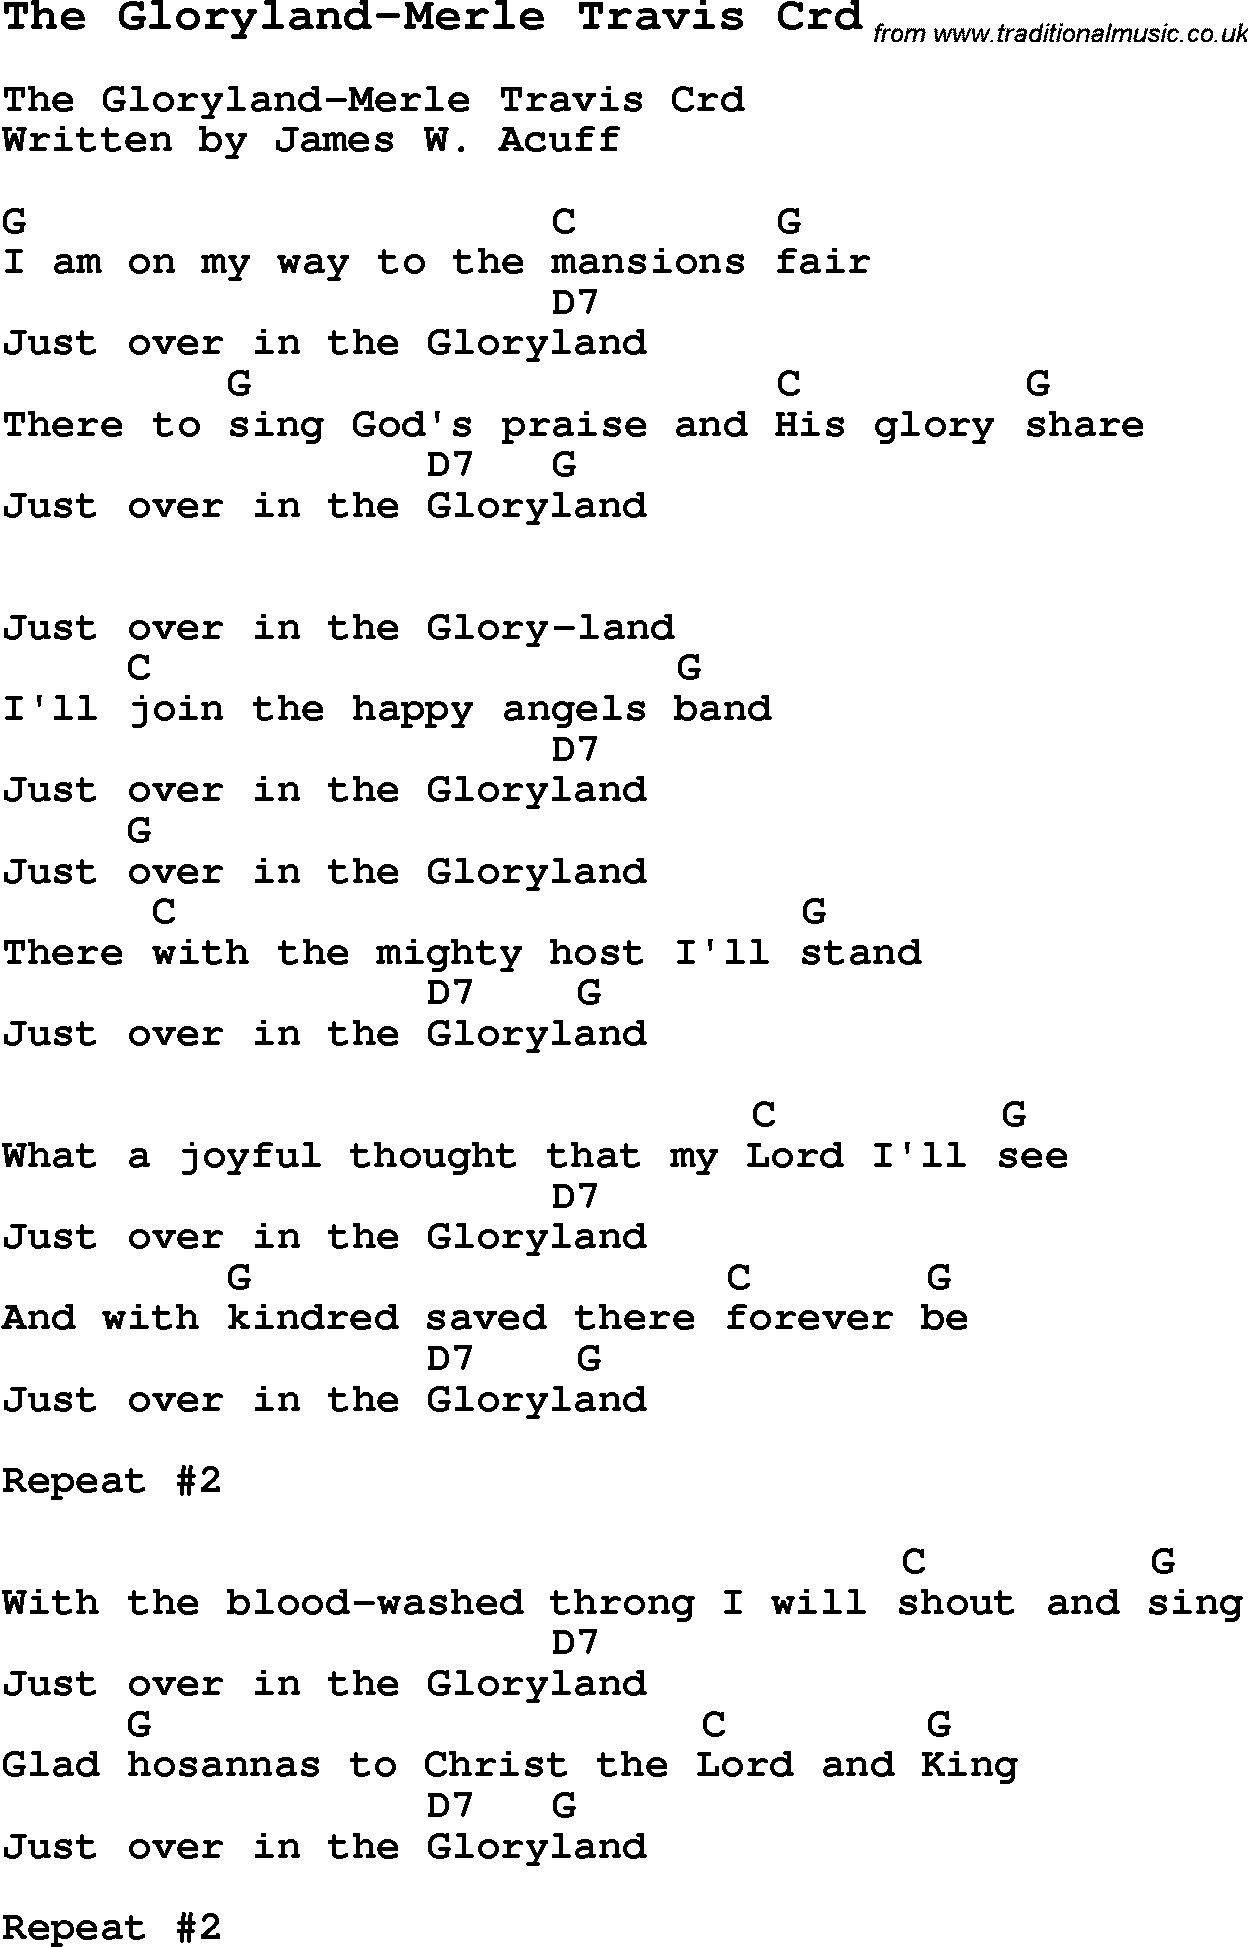 Skiffle Song Lyrics for The Gloryland-Merle Travis with chords for Mandolin, Ukulele, Guitar, Banjo etc.